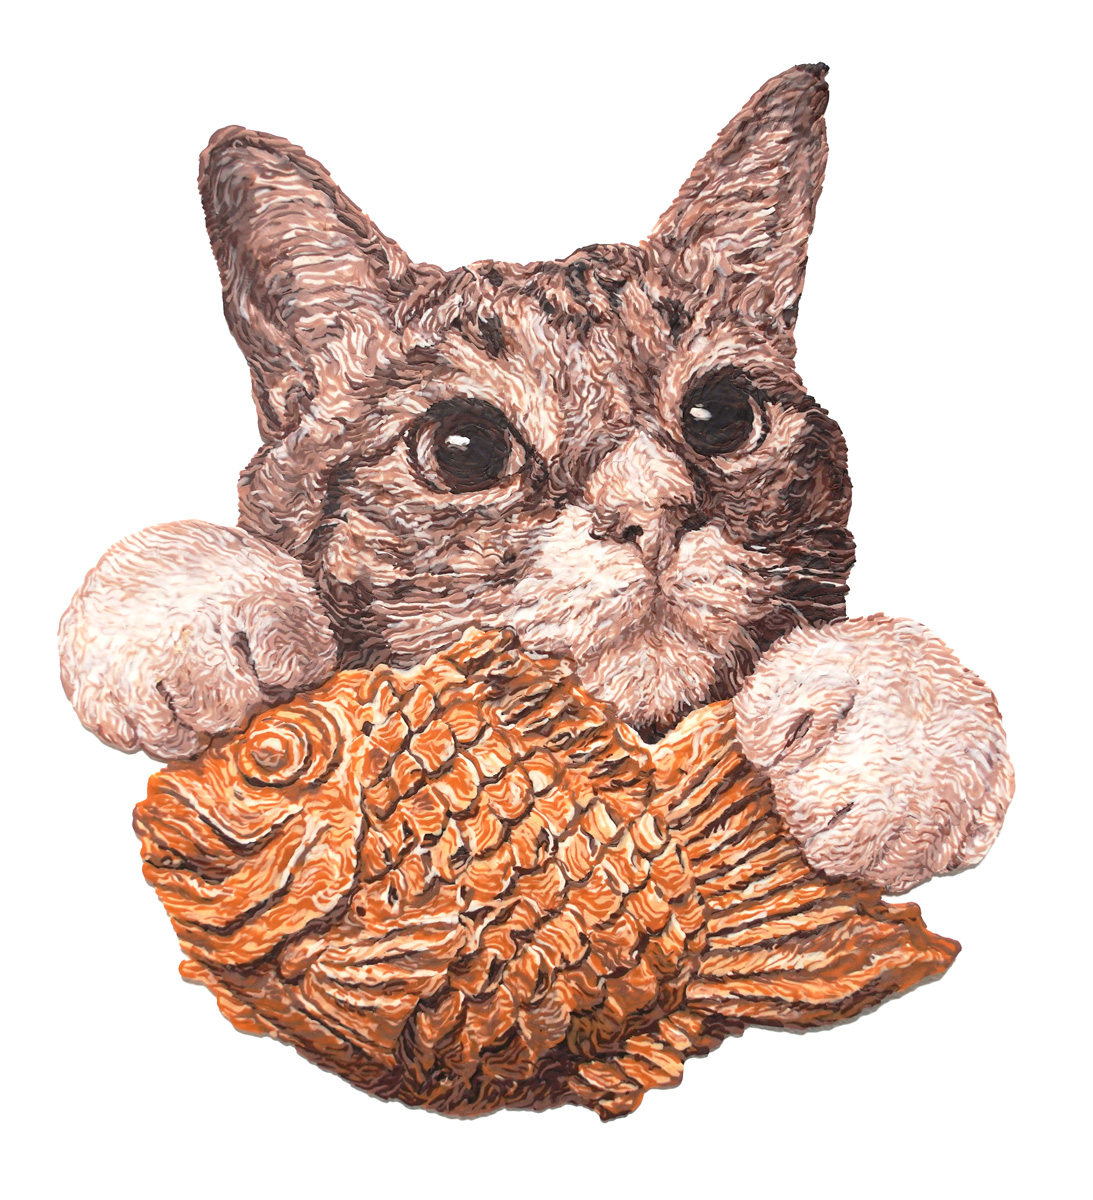 「粘土でつくった たい焼きと猫さん 完成しました!! タイトルは「これくださ〜い!」|西浦 康太のイラスト